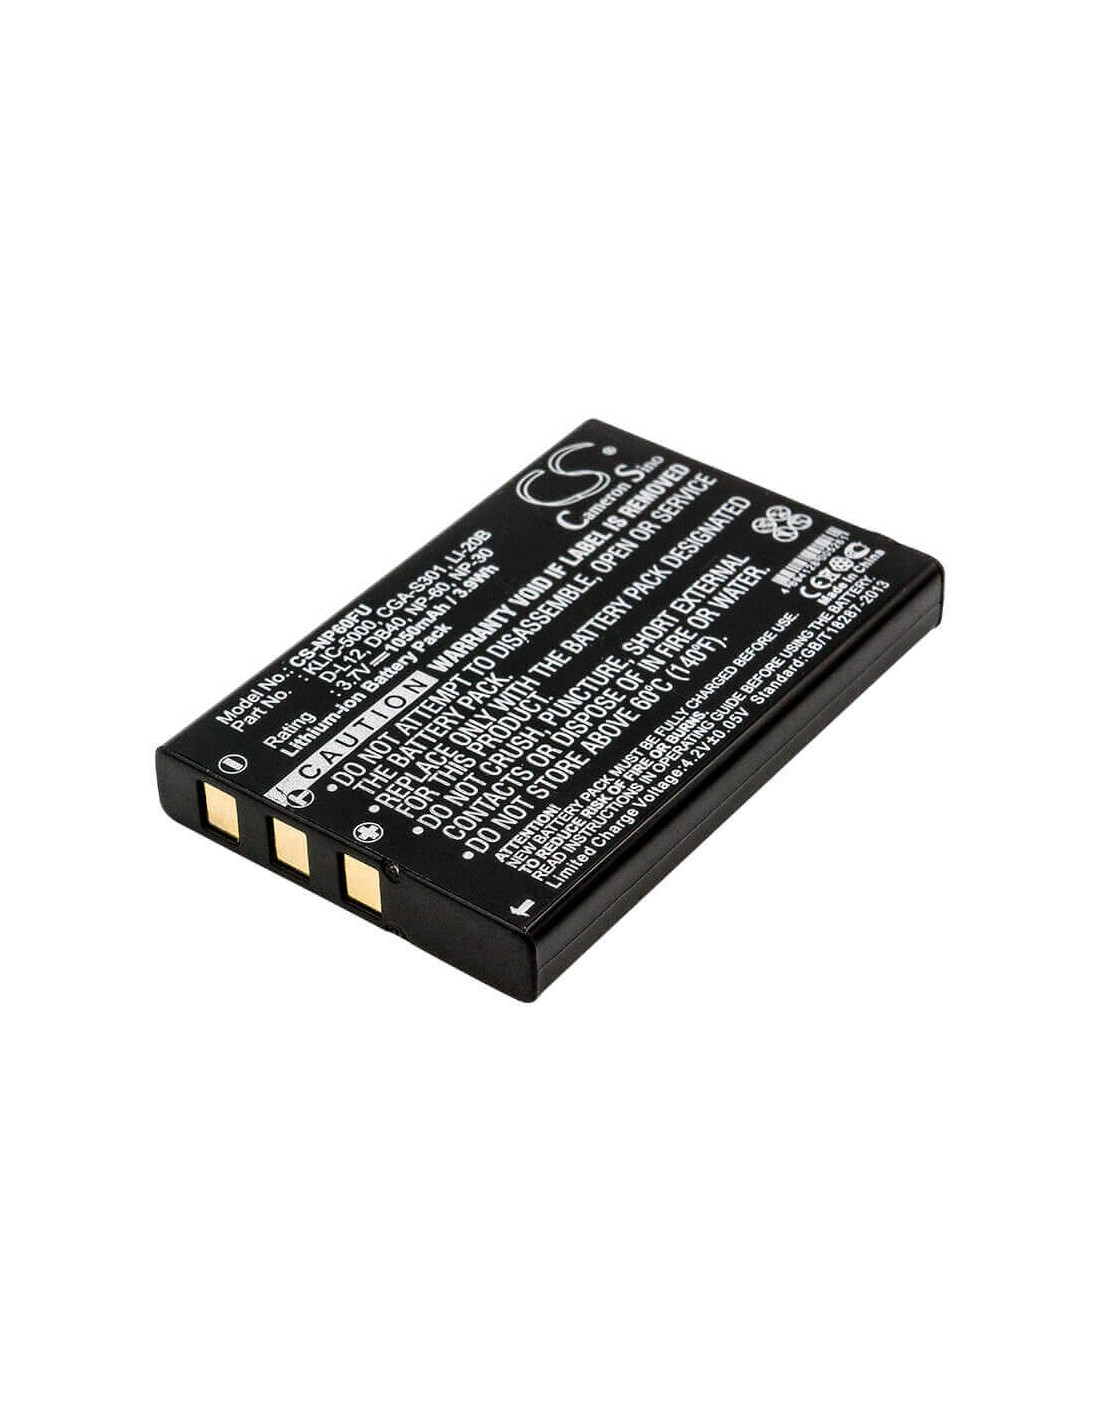 Battery for Easypix Dv5311, Dv5311hd 3.7V, 1050mAh - 3.89Wh